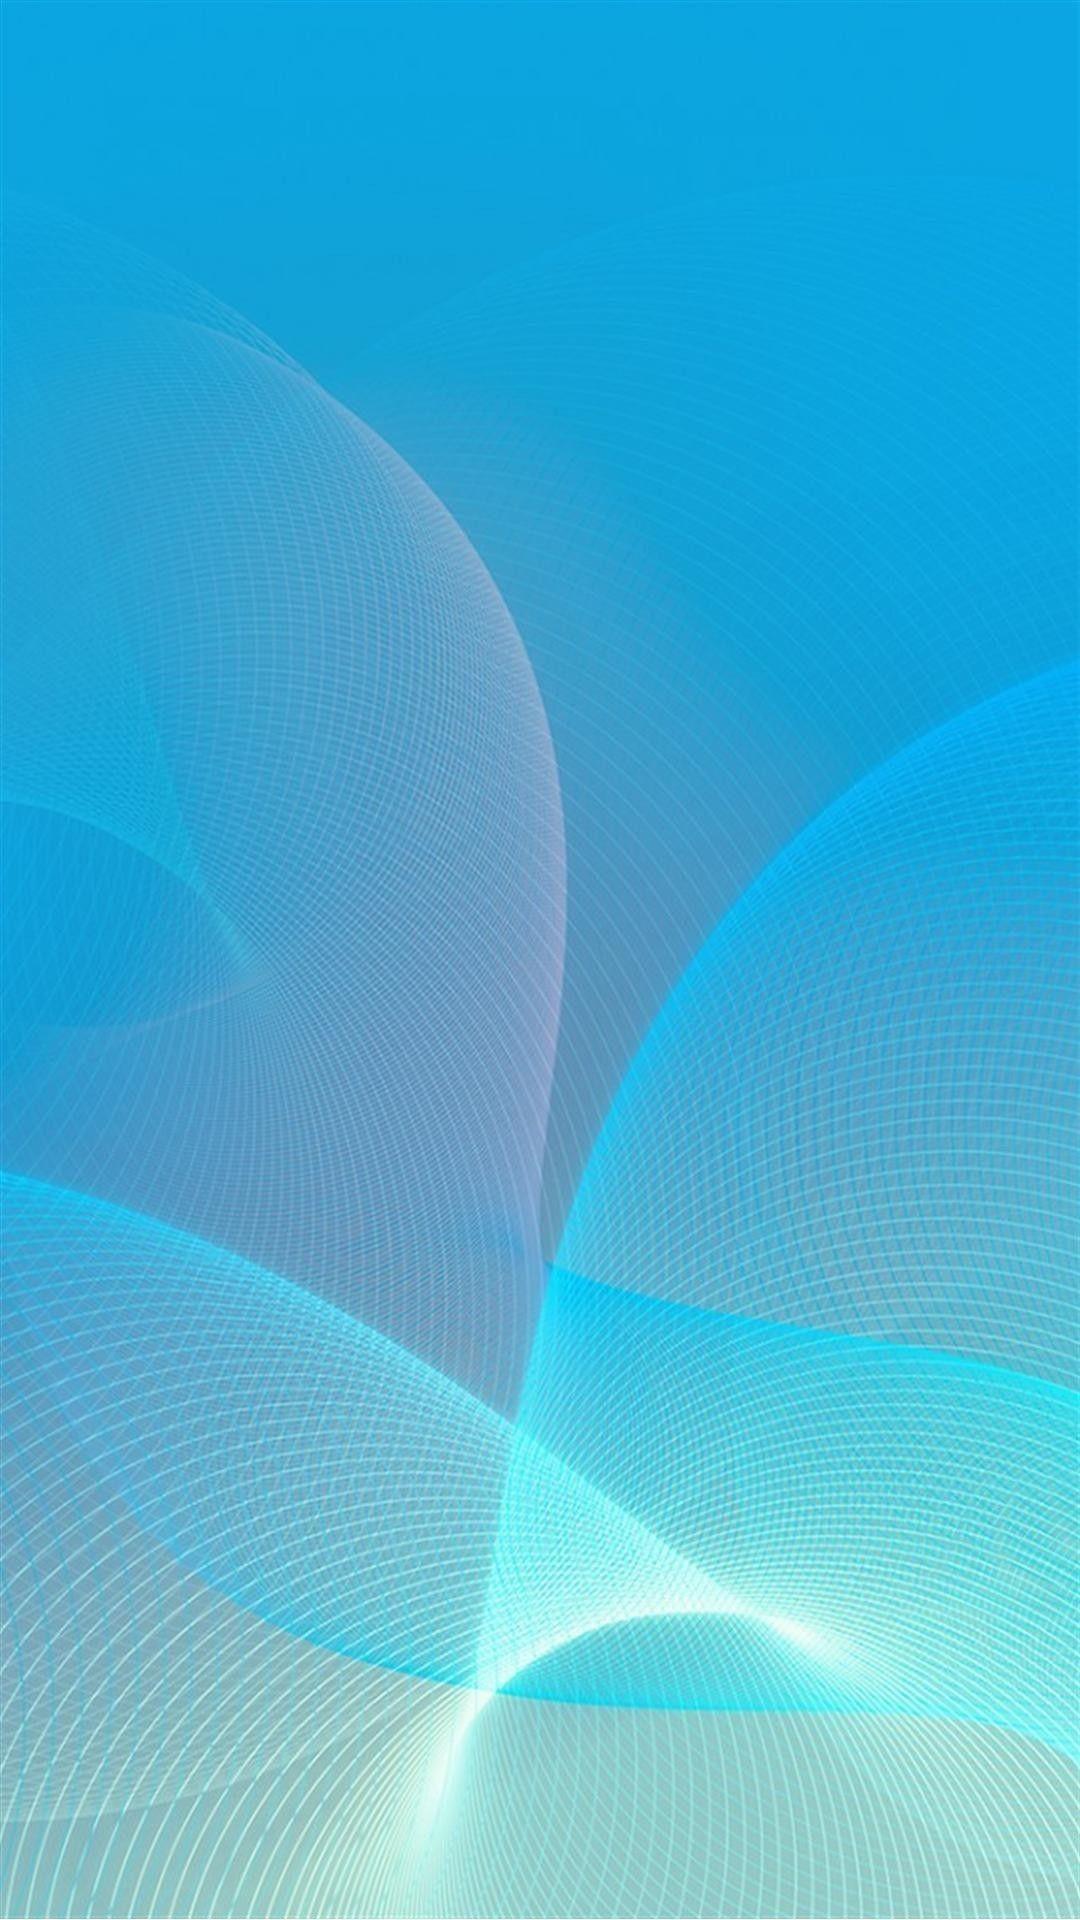 Hình nền Samsung Galaxy màu xanh biển đẹp: Bạn đang tìm kiếm một hình nền độc đáo và nổi bật cho Samsung Galaxy của mình? Hãy ngắm nhìn hình nền xanh biển tuyệt đẹp này với thiết kế đơn giản nhưng không kém phần ấn tượng! Sắc xanh tươi mát giúp đem lại cảm giác thư giãn, cũng như tôn lên vẻ đẹp sang trọng của chiếc điện thoại của bạn.